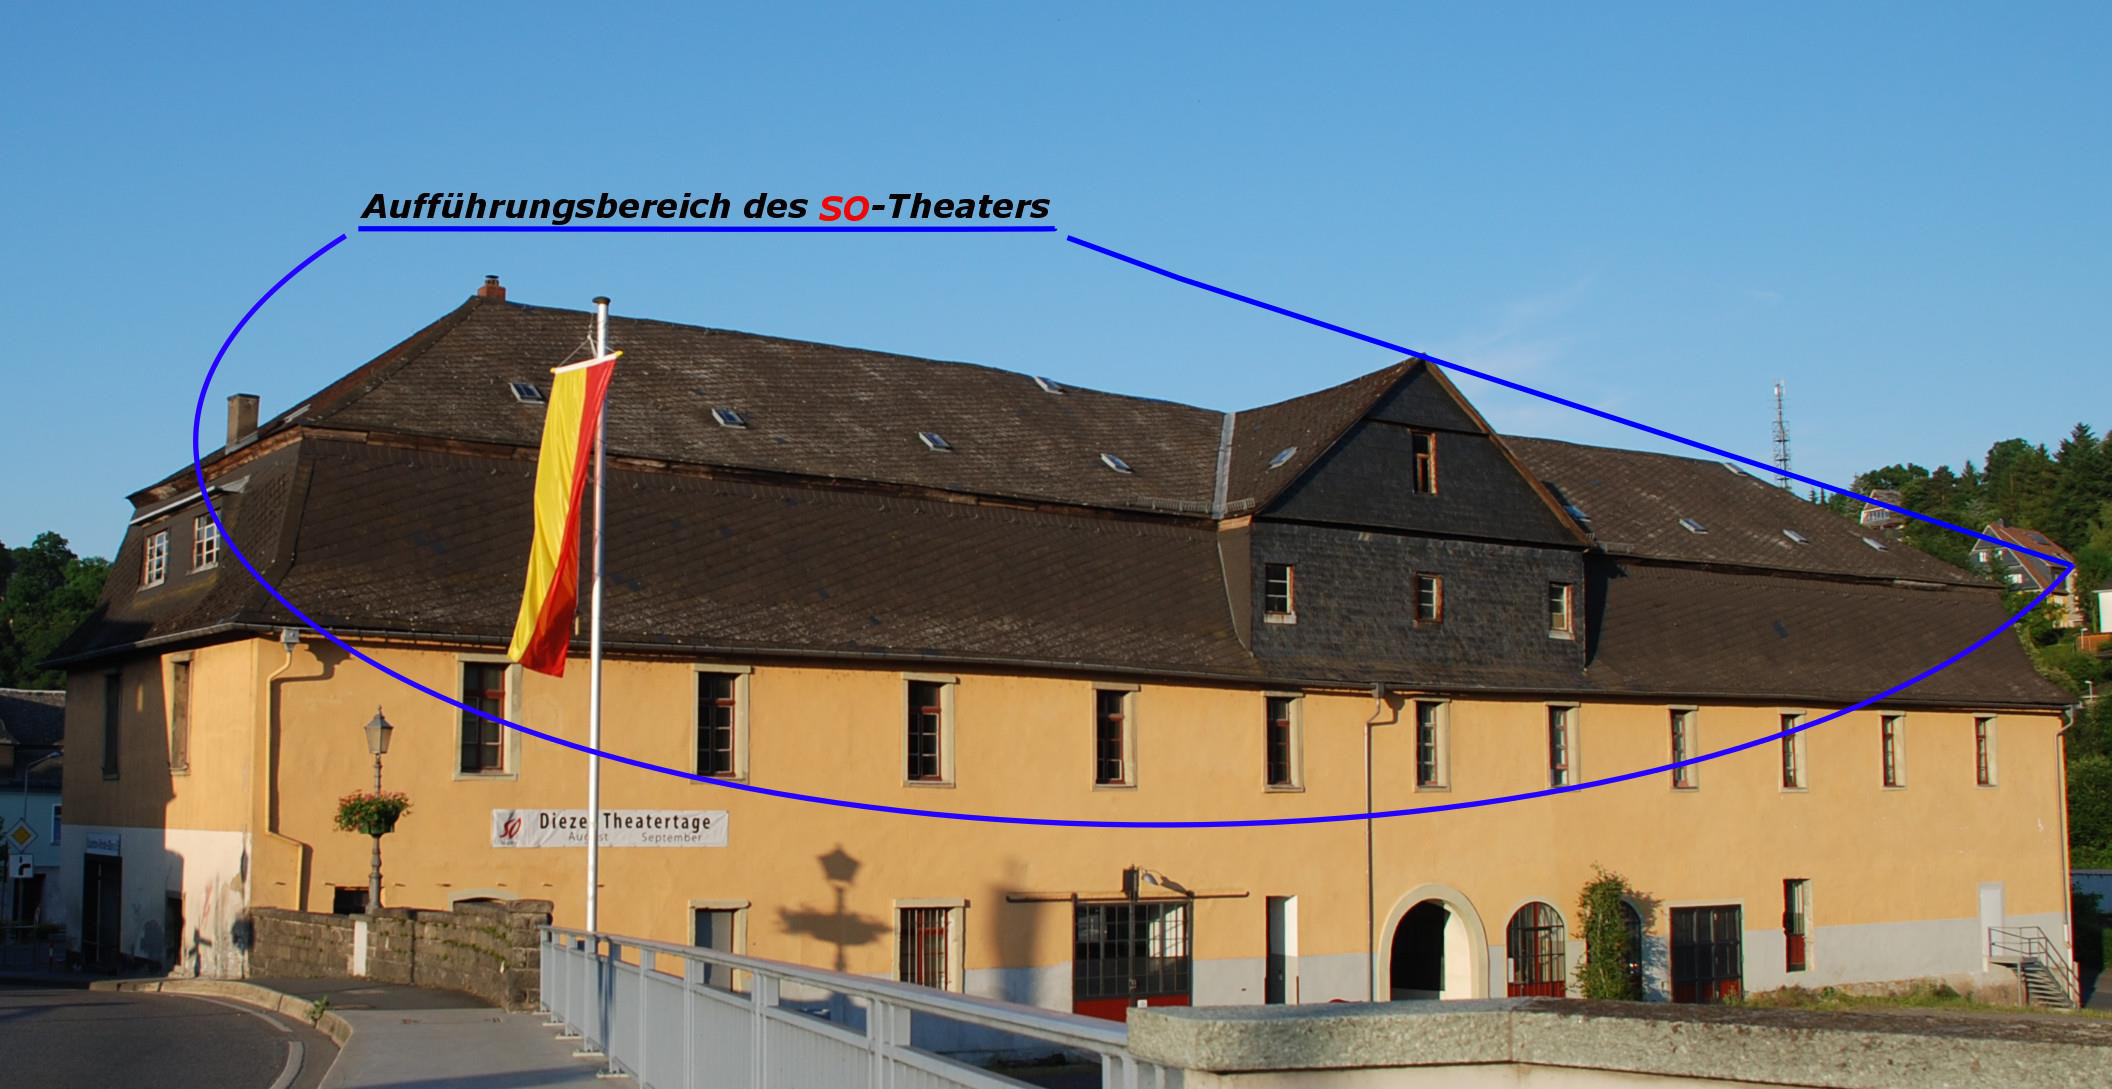 Vom SO-Theater genutzter Bereich des Fruchtspeichers; linke Gebäudehälfte: Aufführungsraum, rechte Gebäudehälfte: Scheinbar